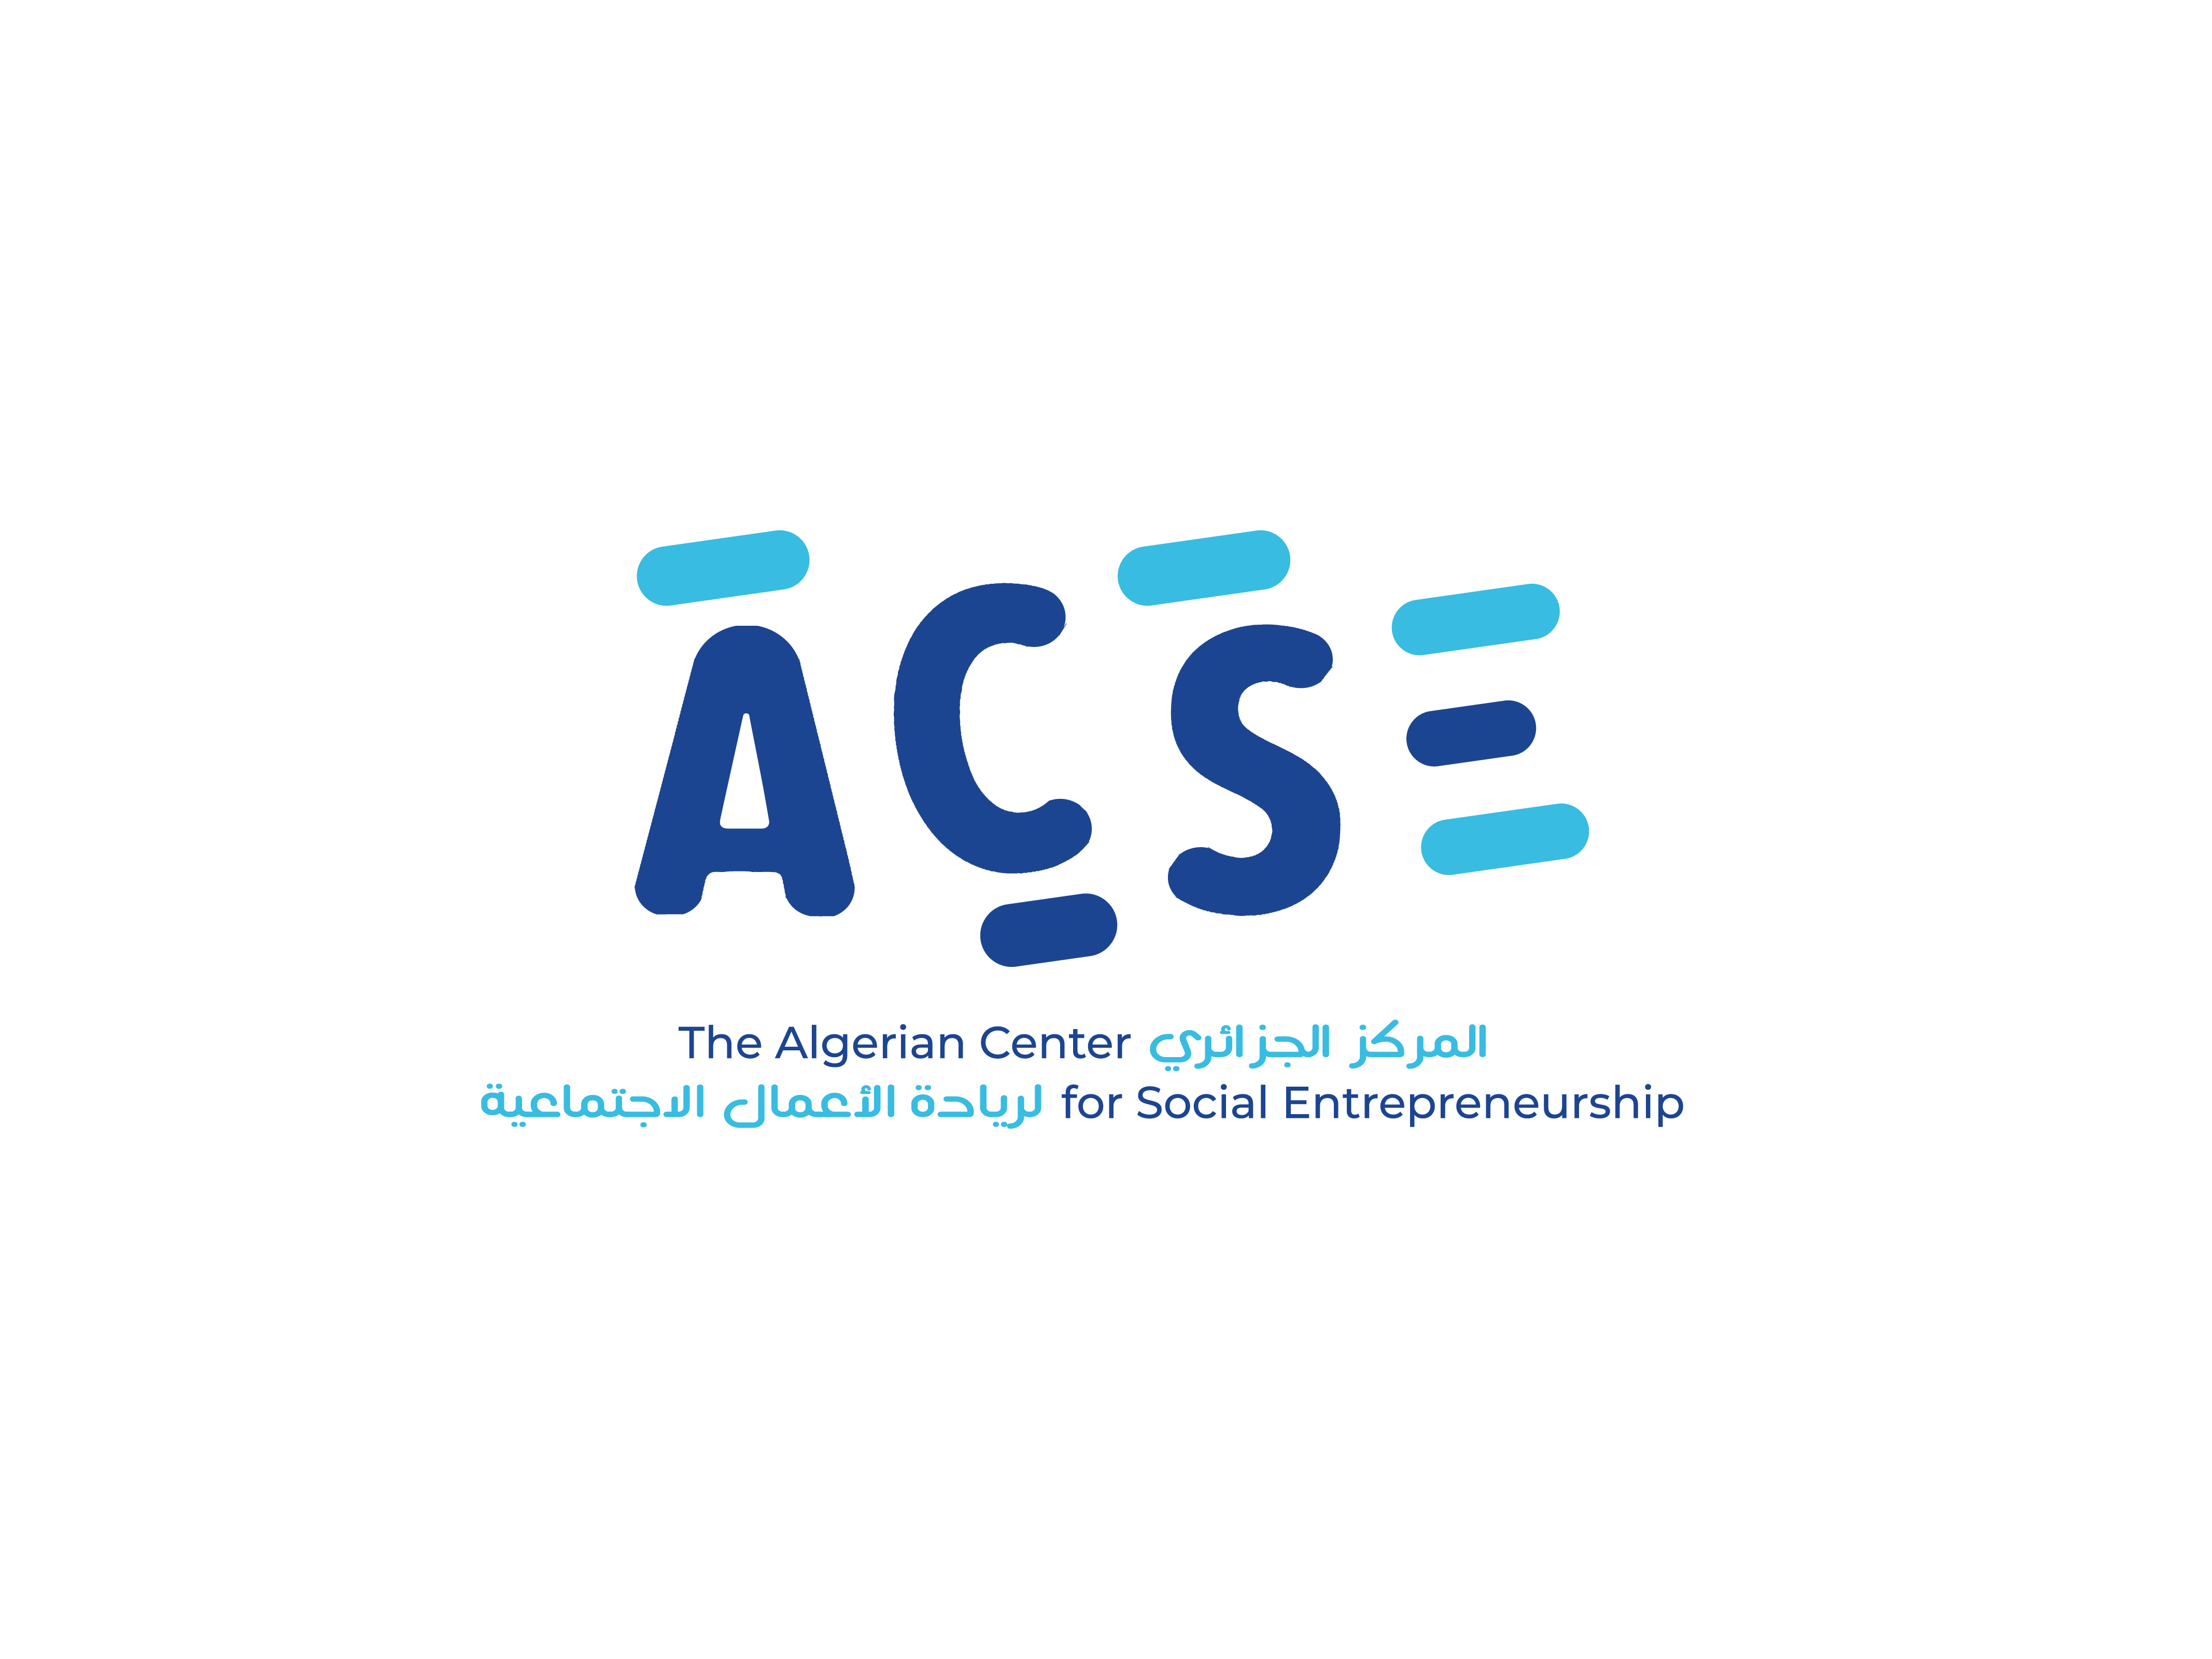 The algerian center for social entrepreneurship